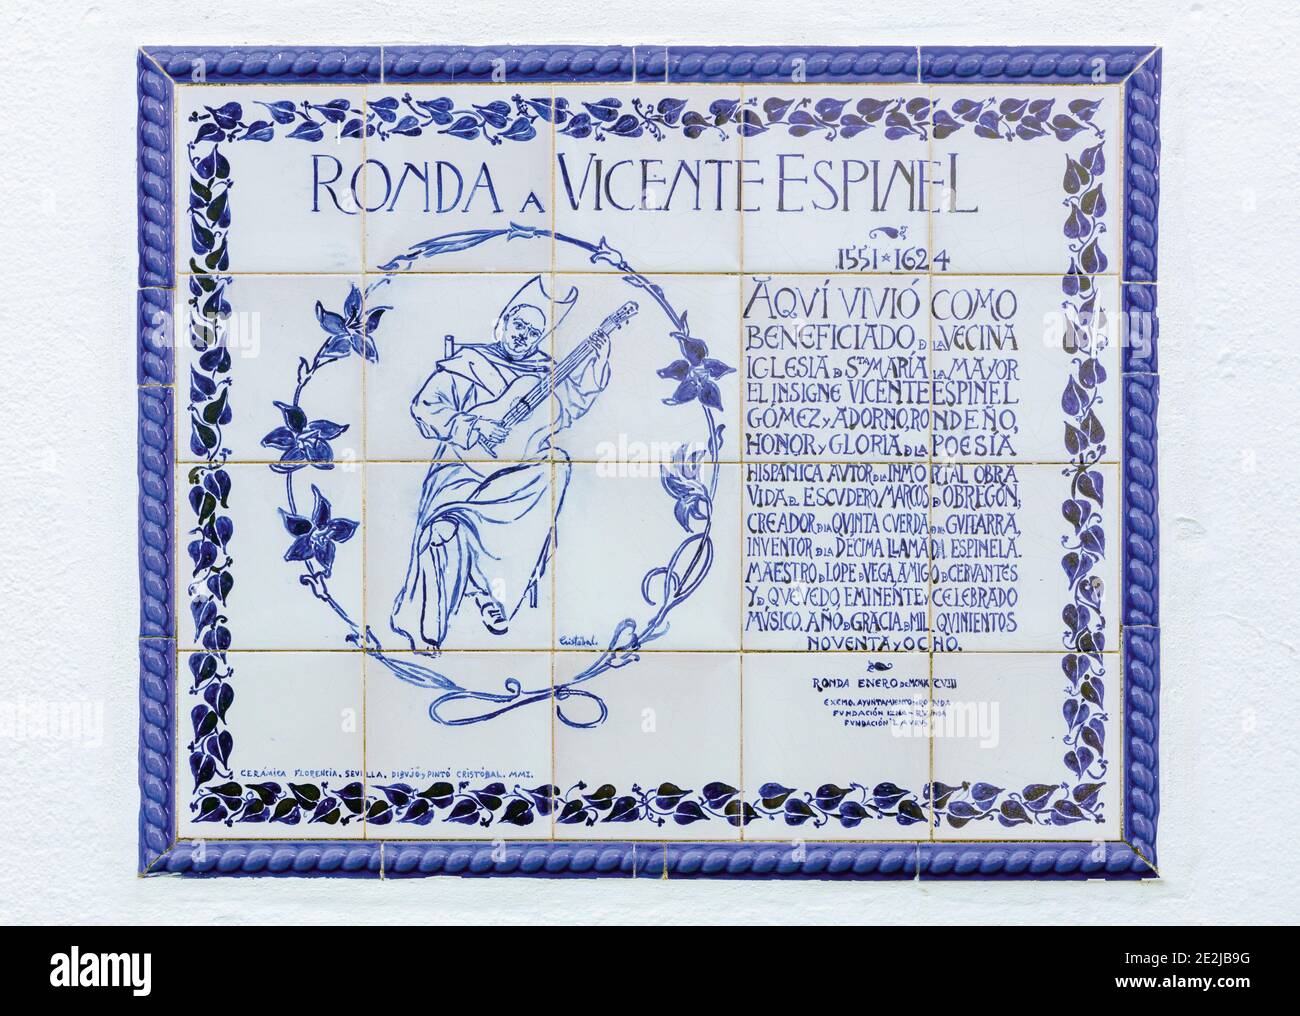 Lapide che commemora Vicente Espinel a Ronda, provincia di Malaga, Andalusia, Spagna. Espinel, nome completo Vicente Gómez Martínez-Espinel, 1551 - 1624, è stato Foto Stock